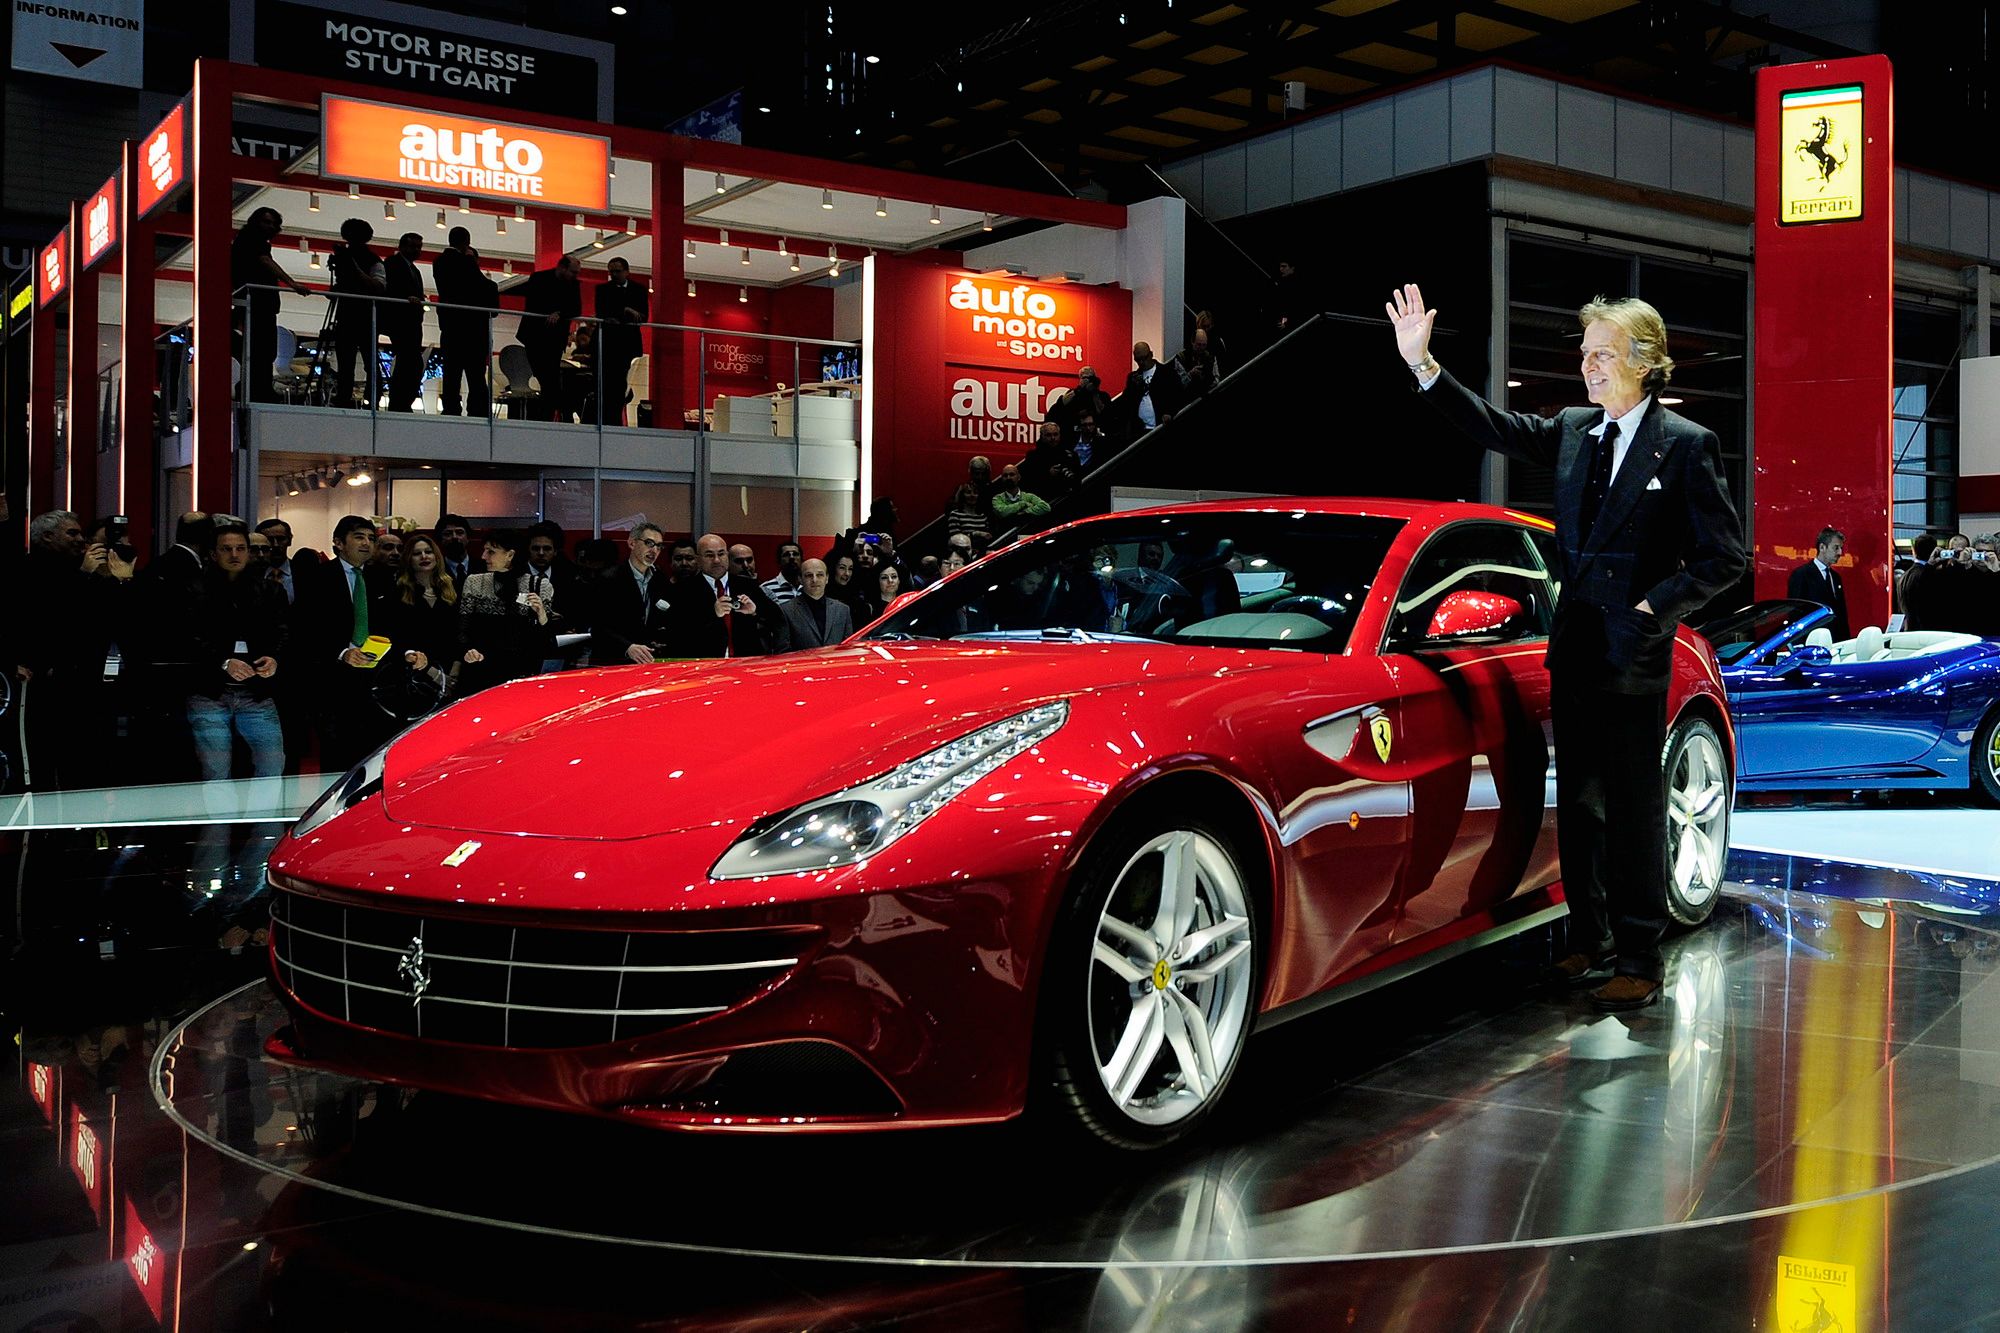 2012 Ferrari FF